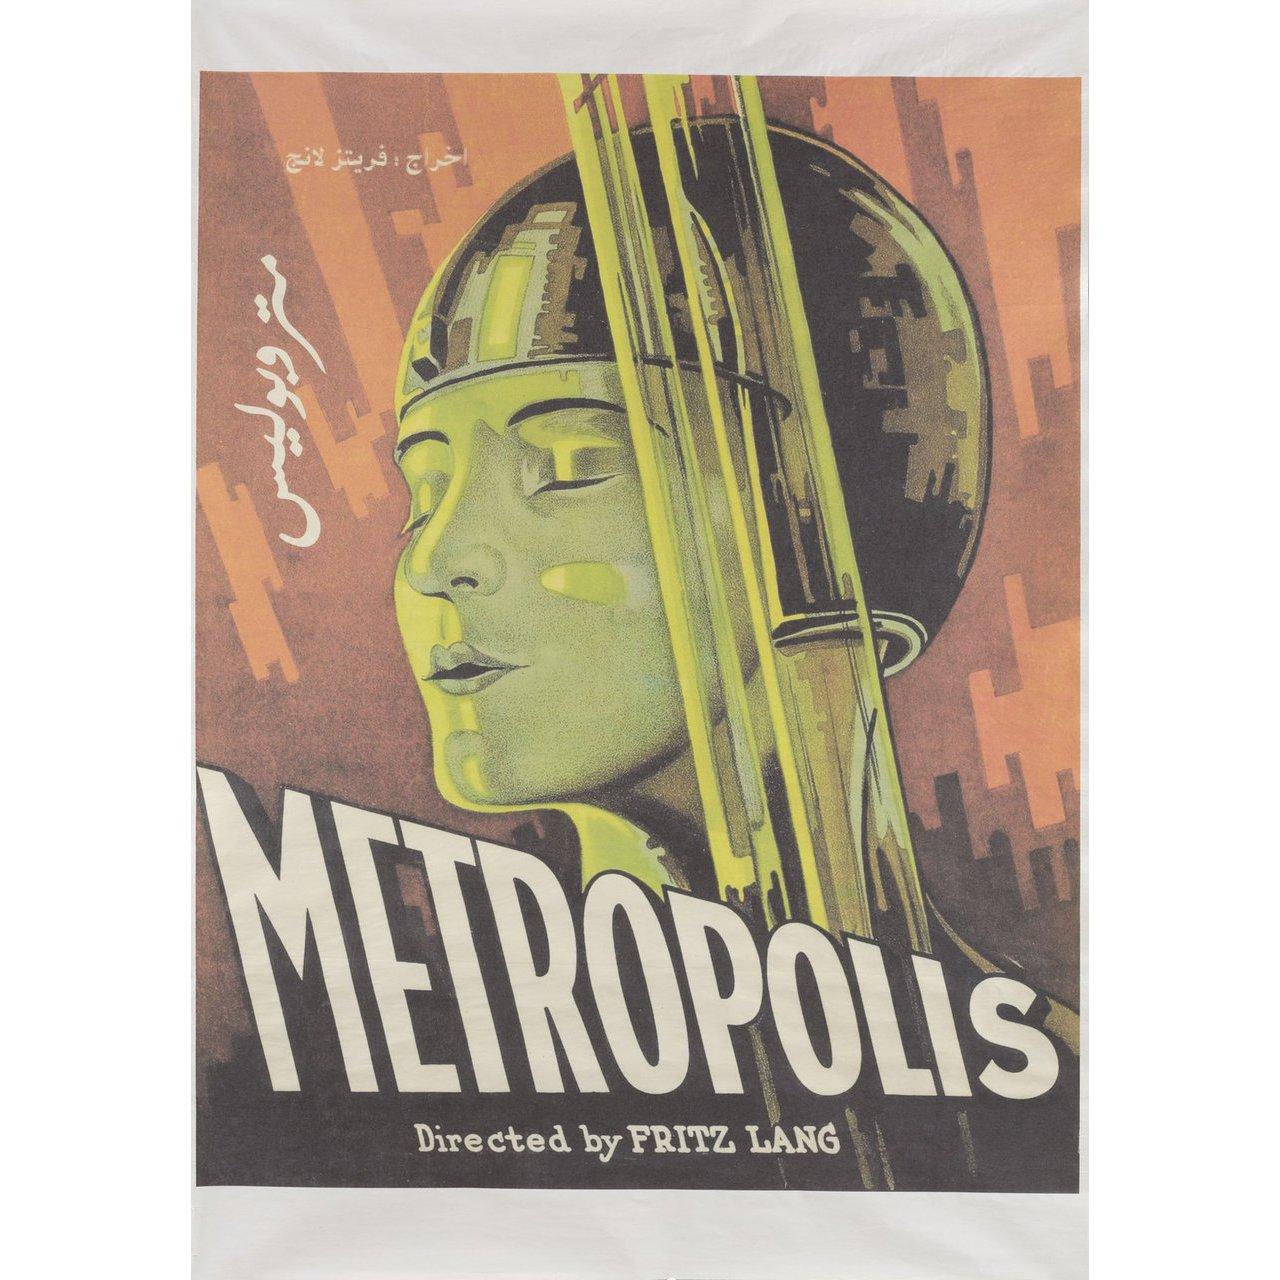 Originales ägyptisches B1-Plakat aus den 2000er Jahren für den Film Metropolis von 1927 unter der Regie von Fritz Lang mit Alfred Abel / Gustav Fröhlich / Rudolf Klein-Rogge / Fritz Rasp. Sehr guter Zustand, gerollt. Bitte beachten Sie: Die Größe